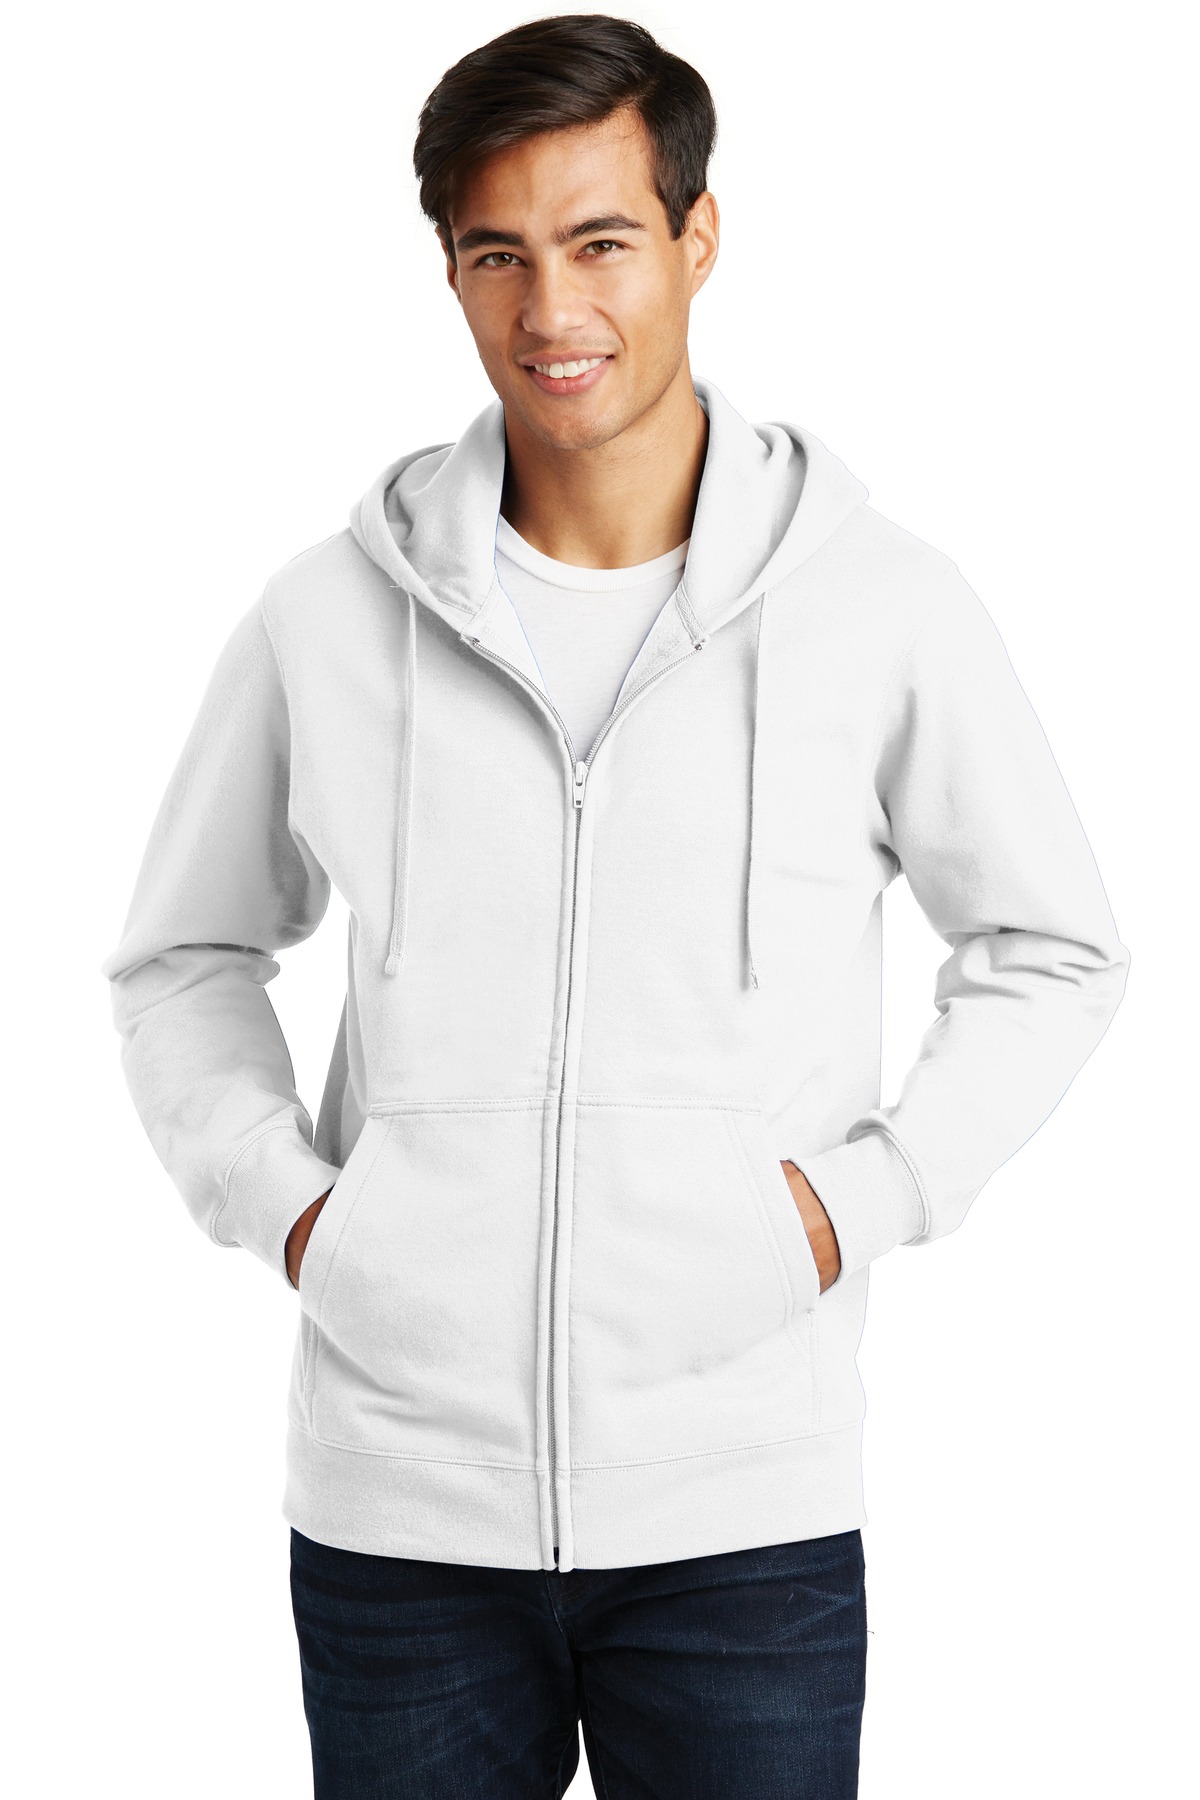 Port &#38; Company Fan Favorite Fleece Full&#45;Zip Hooded Sweatshirt-Port & Company